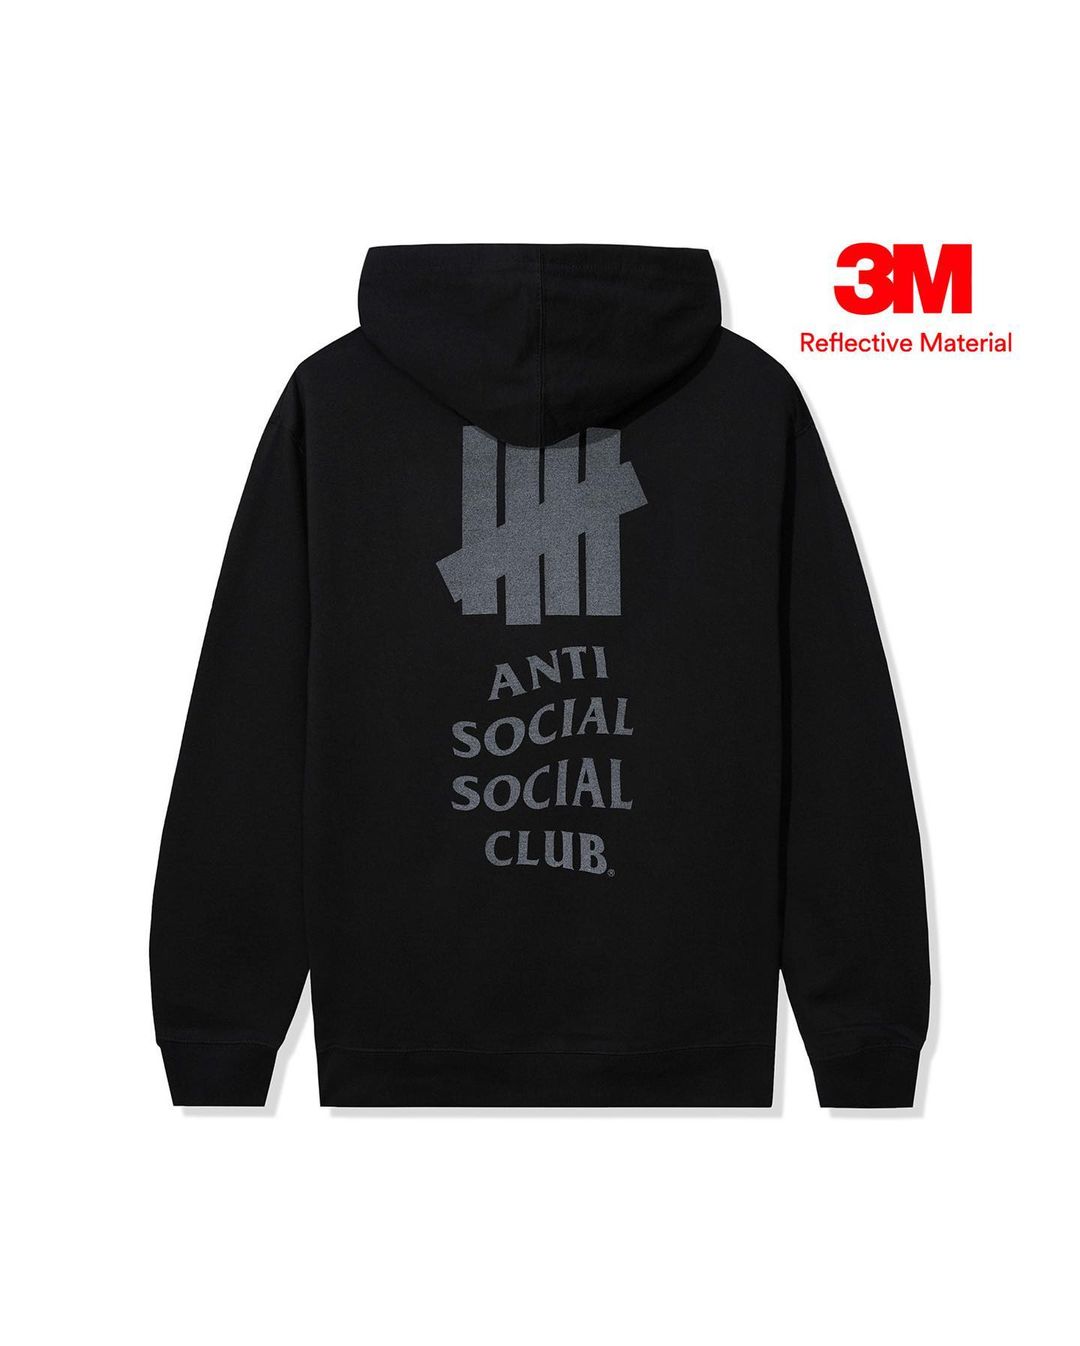 Anti Social Social Club × UNDEFEATED 最新コラボが10/21 発売予定 (アンチ ソーシャル ソーシャル クラブ アンディフィーテッド)